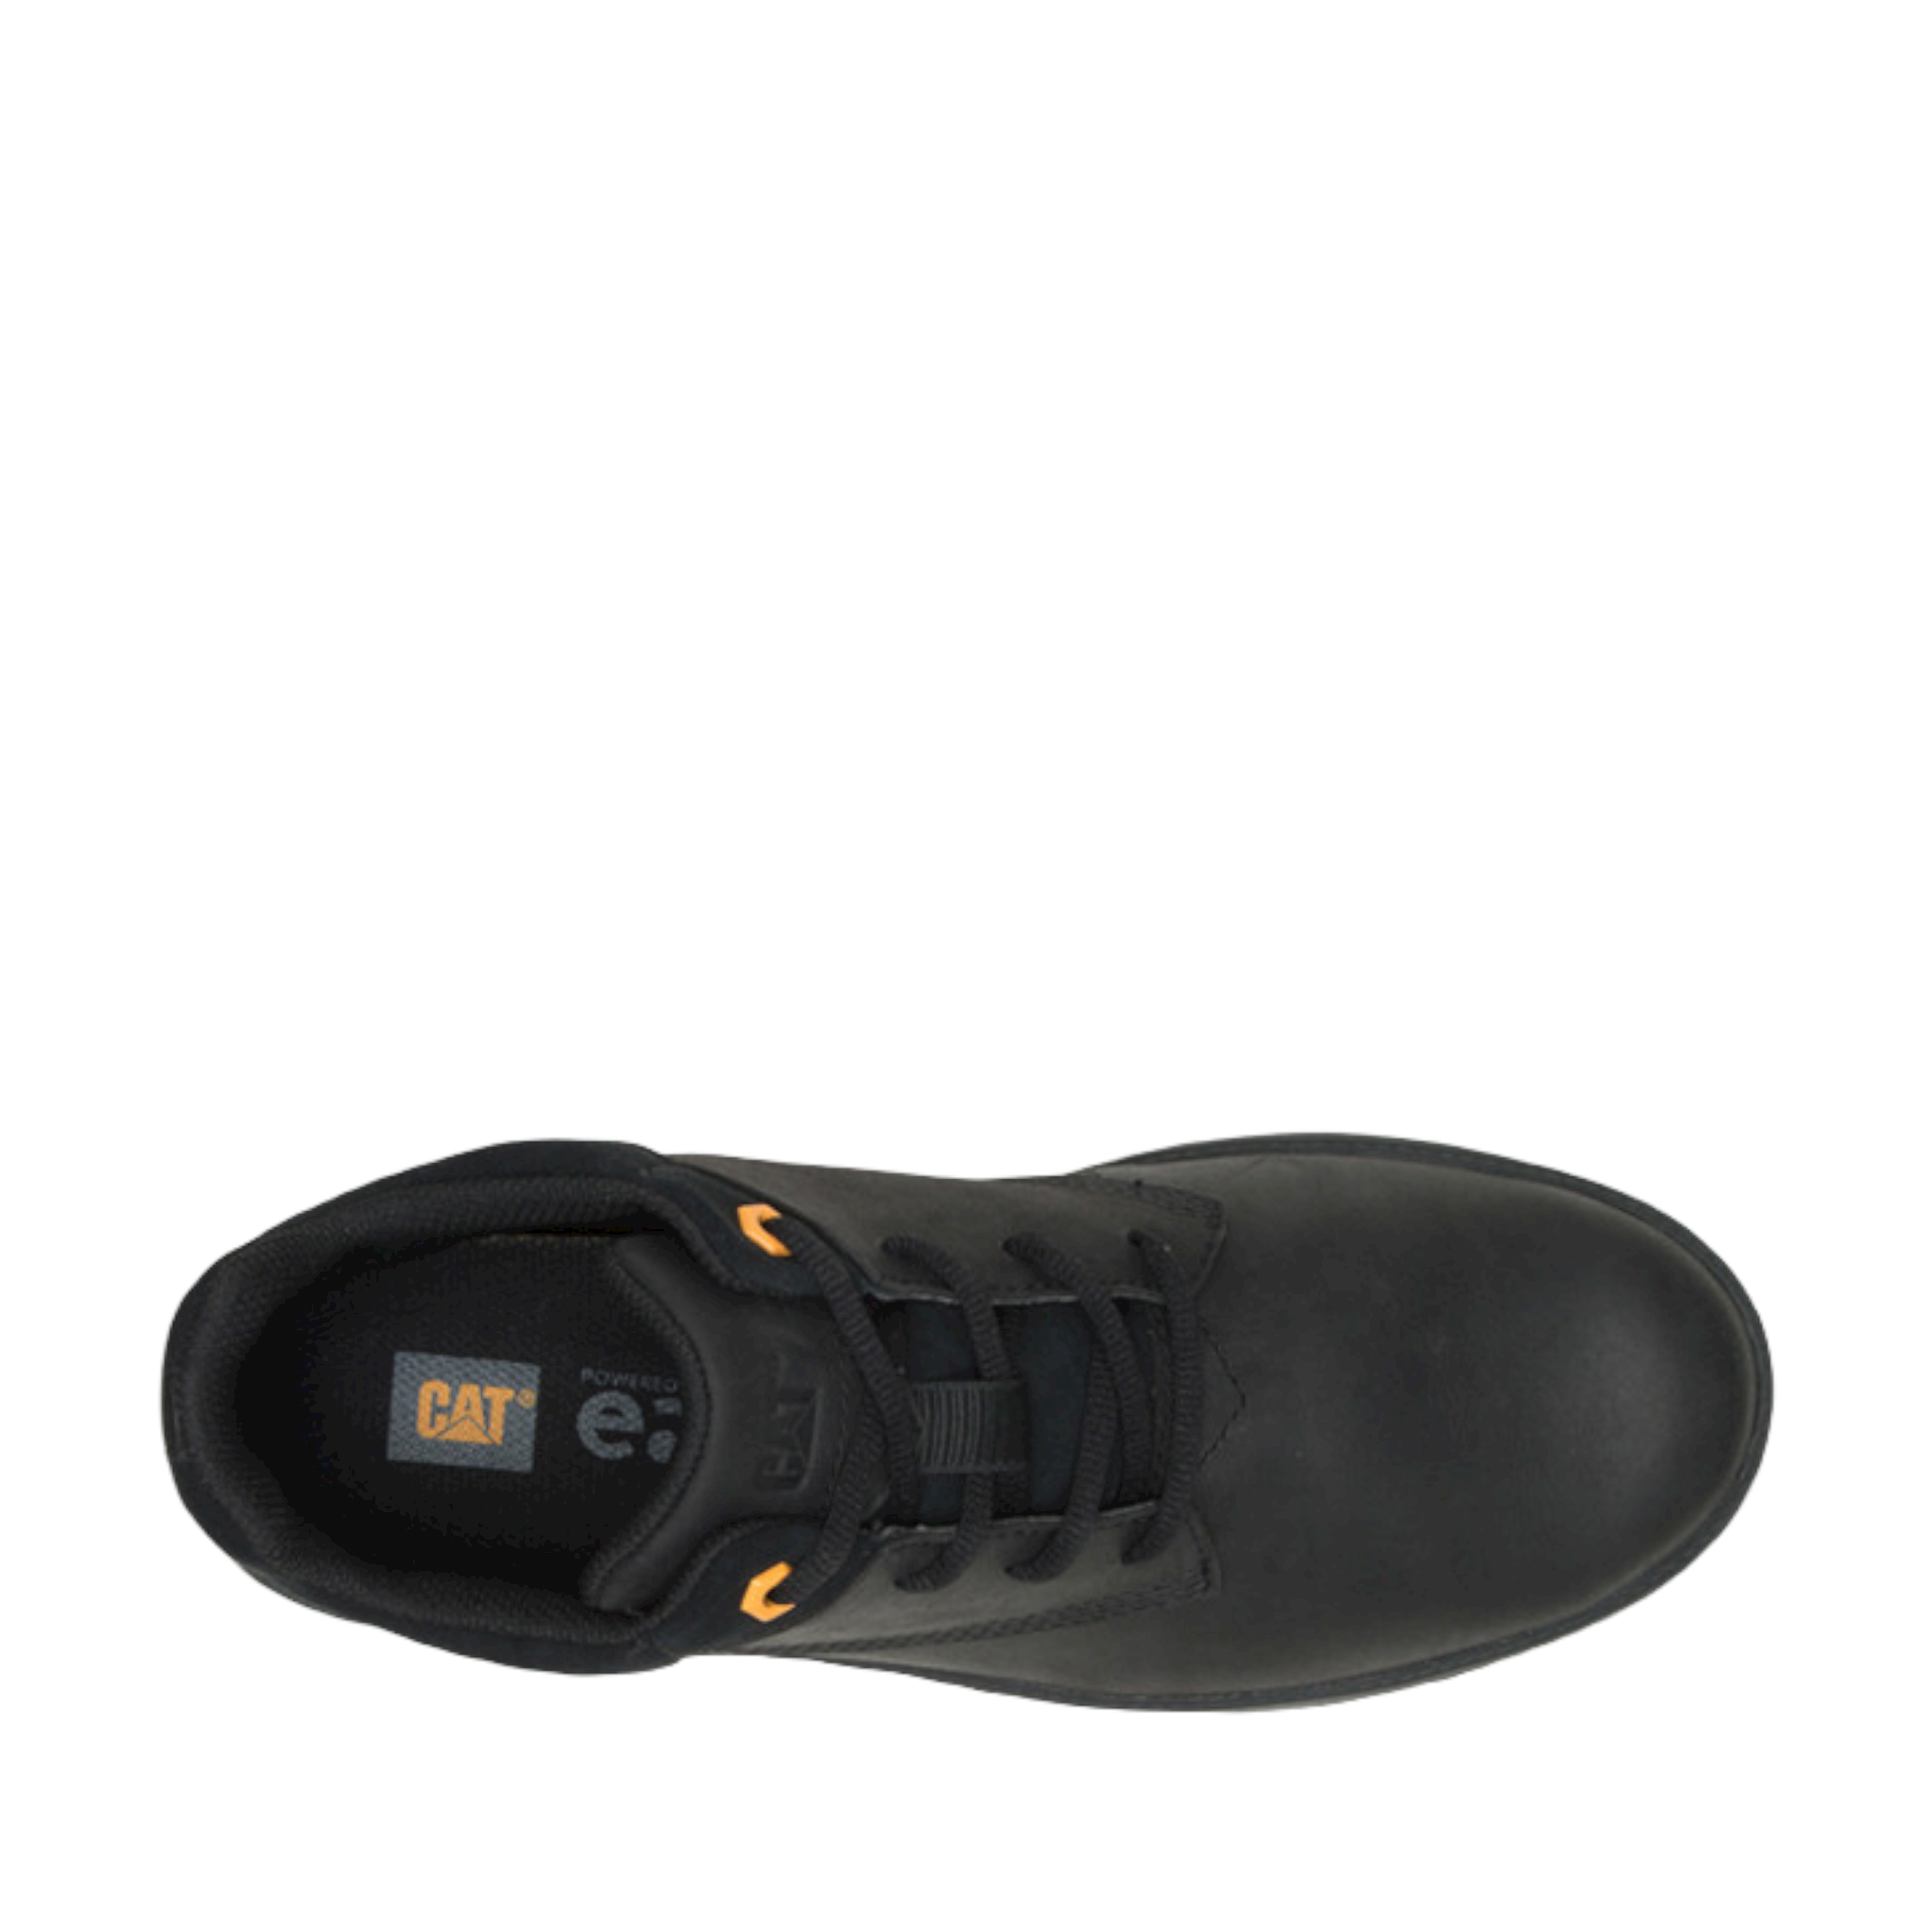 Roamer Mid 2.0 - shoe&amp;me - Caterpillar - Boot - Boots, Mens, Winter